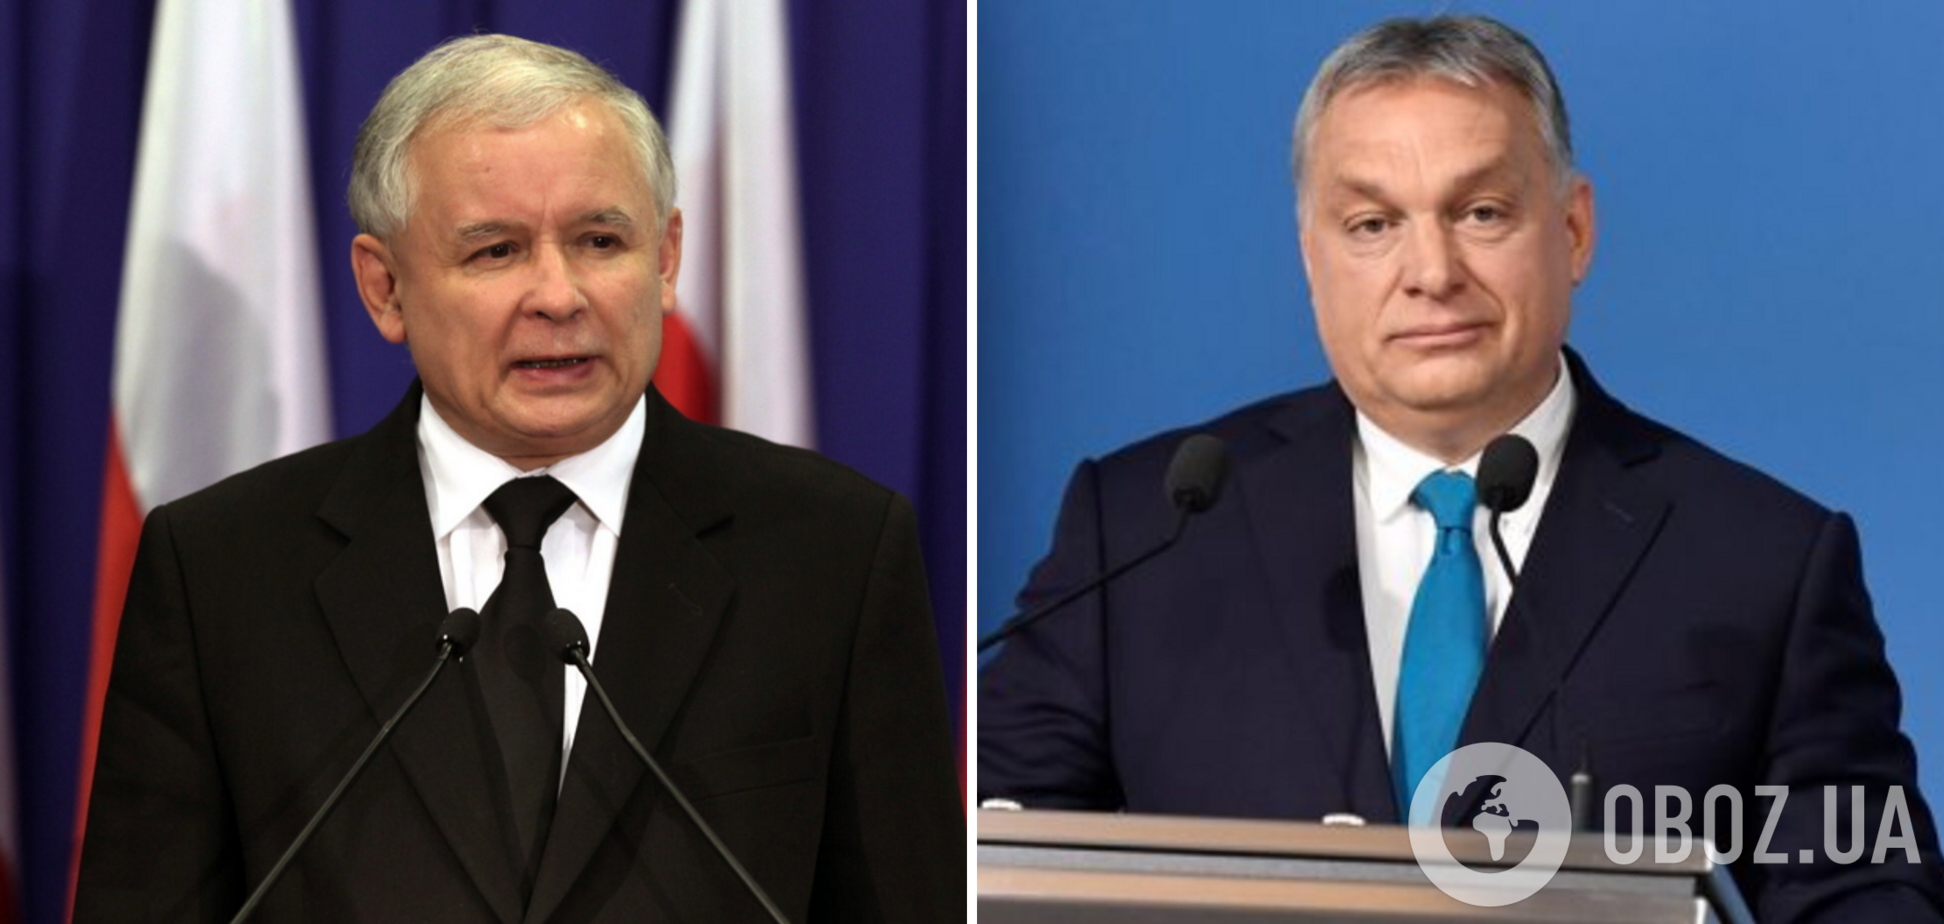 В Польше заговорили о пересмотре отношений с Венгрией: Качиньский 'отправил' Орбана к офтальмологу из-за заявлений о Буче